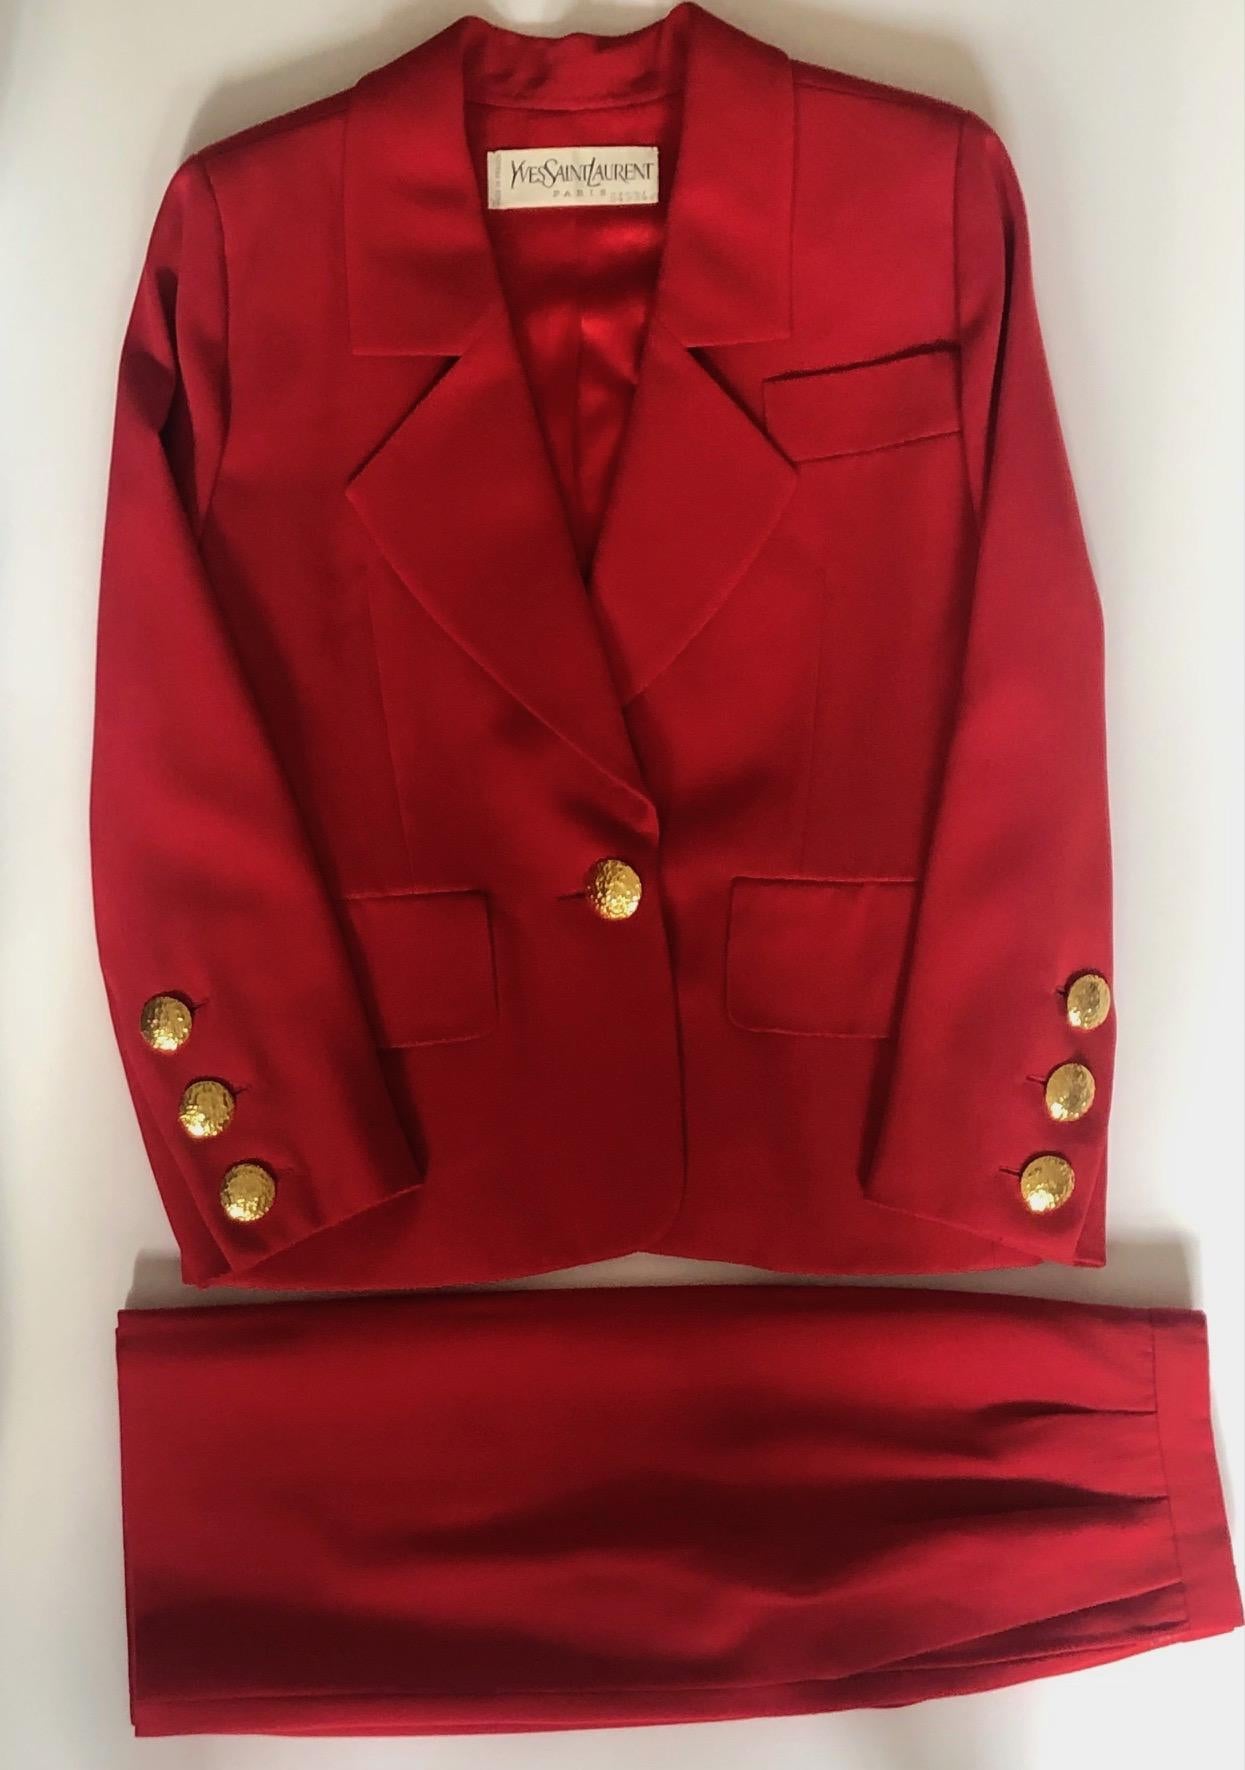 YVES SAINT-LAURENT Haute Couture 64534 Red Single Breasted Jacket Suit Vintage
Yves Saint-Laurent Haute Couture n° 64534 Circa 1988-1990. Un ensemble classique chic, veste-blazer en laine rouge. Veste paddée à col châle cranté, simple boutonnage